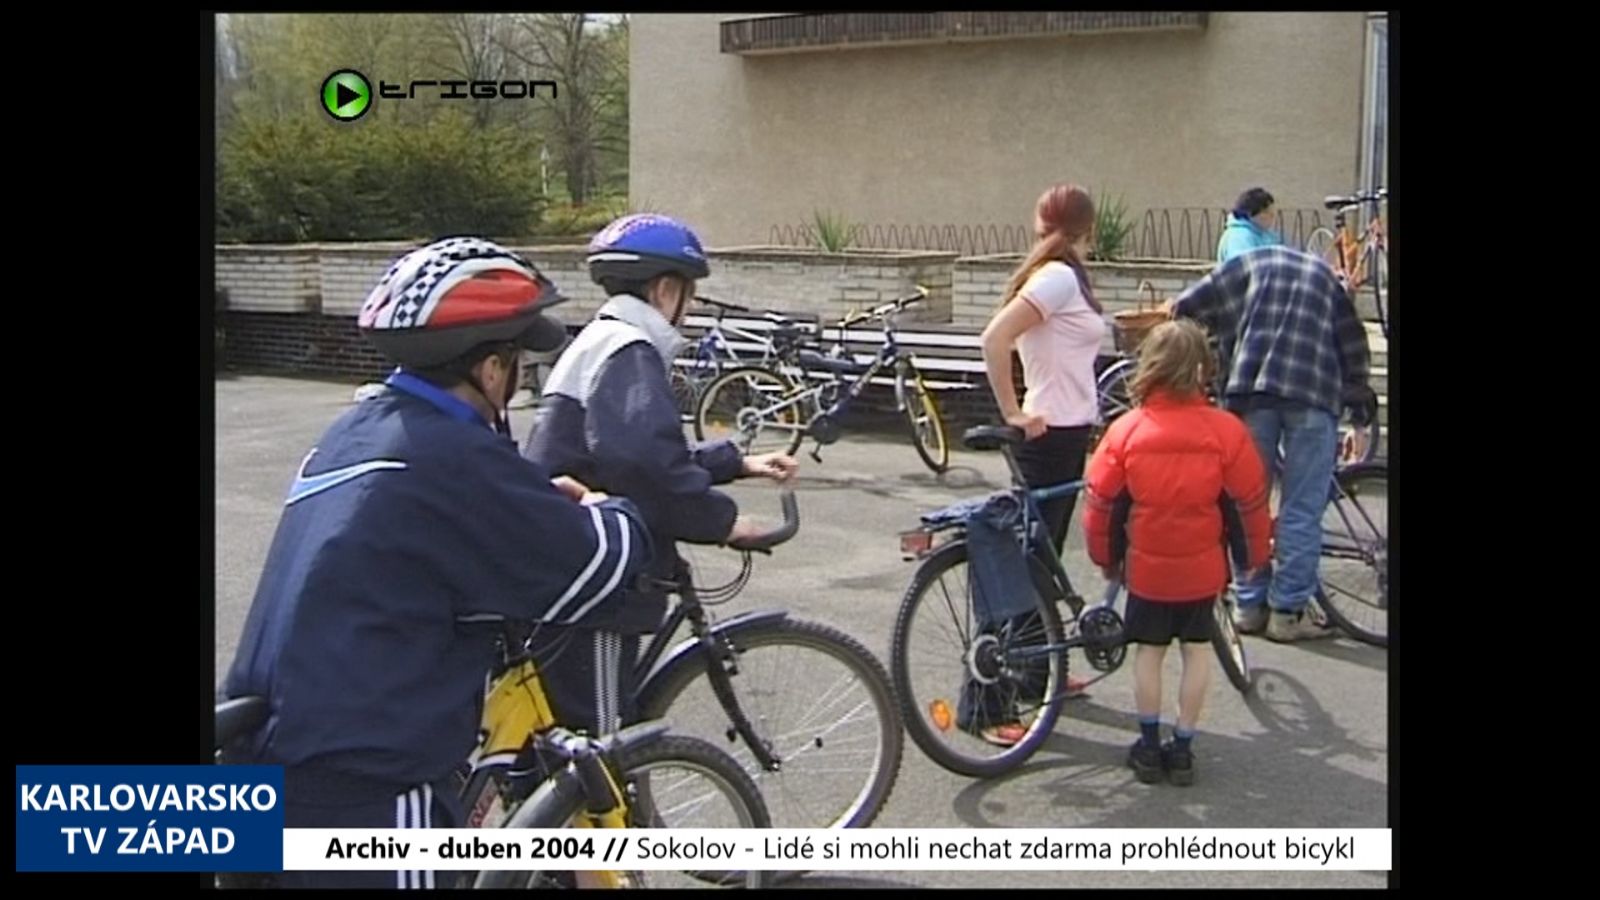 2004 – Sokolov: Lidé si mohli nechat zdarma prohlédnout bicykl (TV Západ)